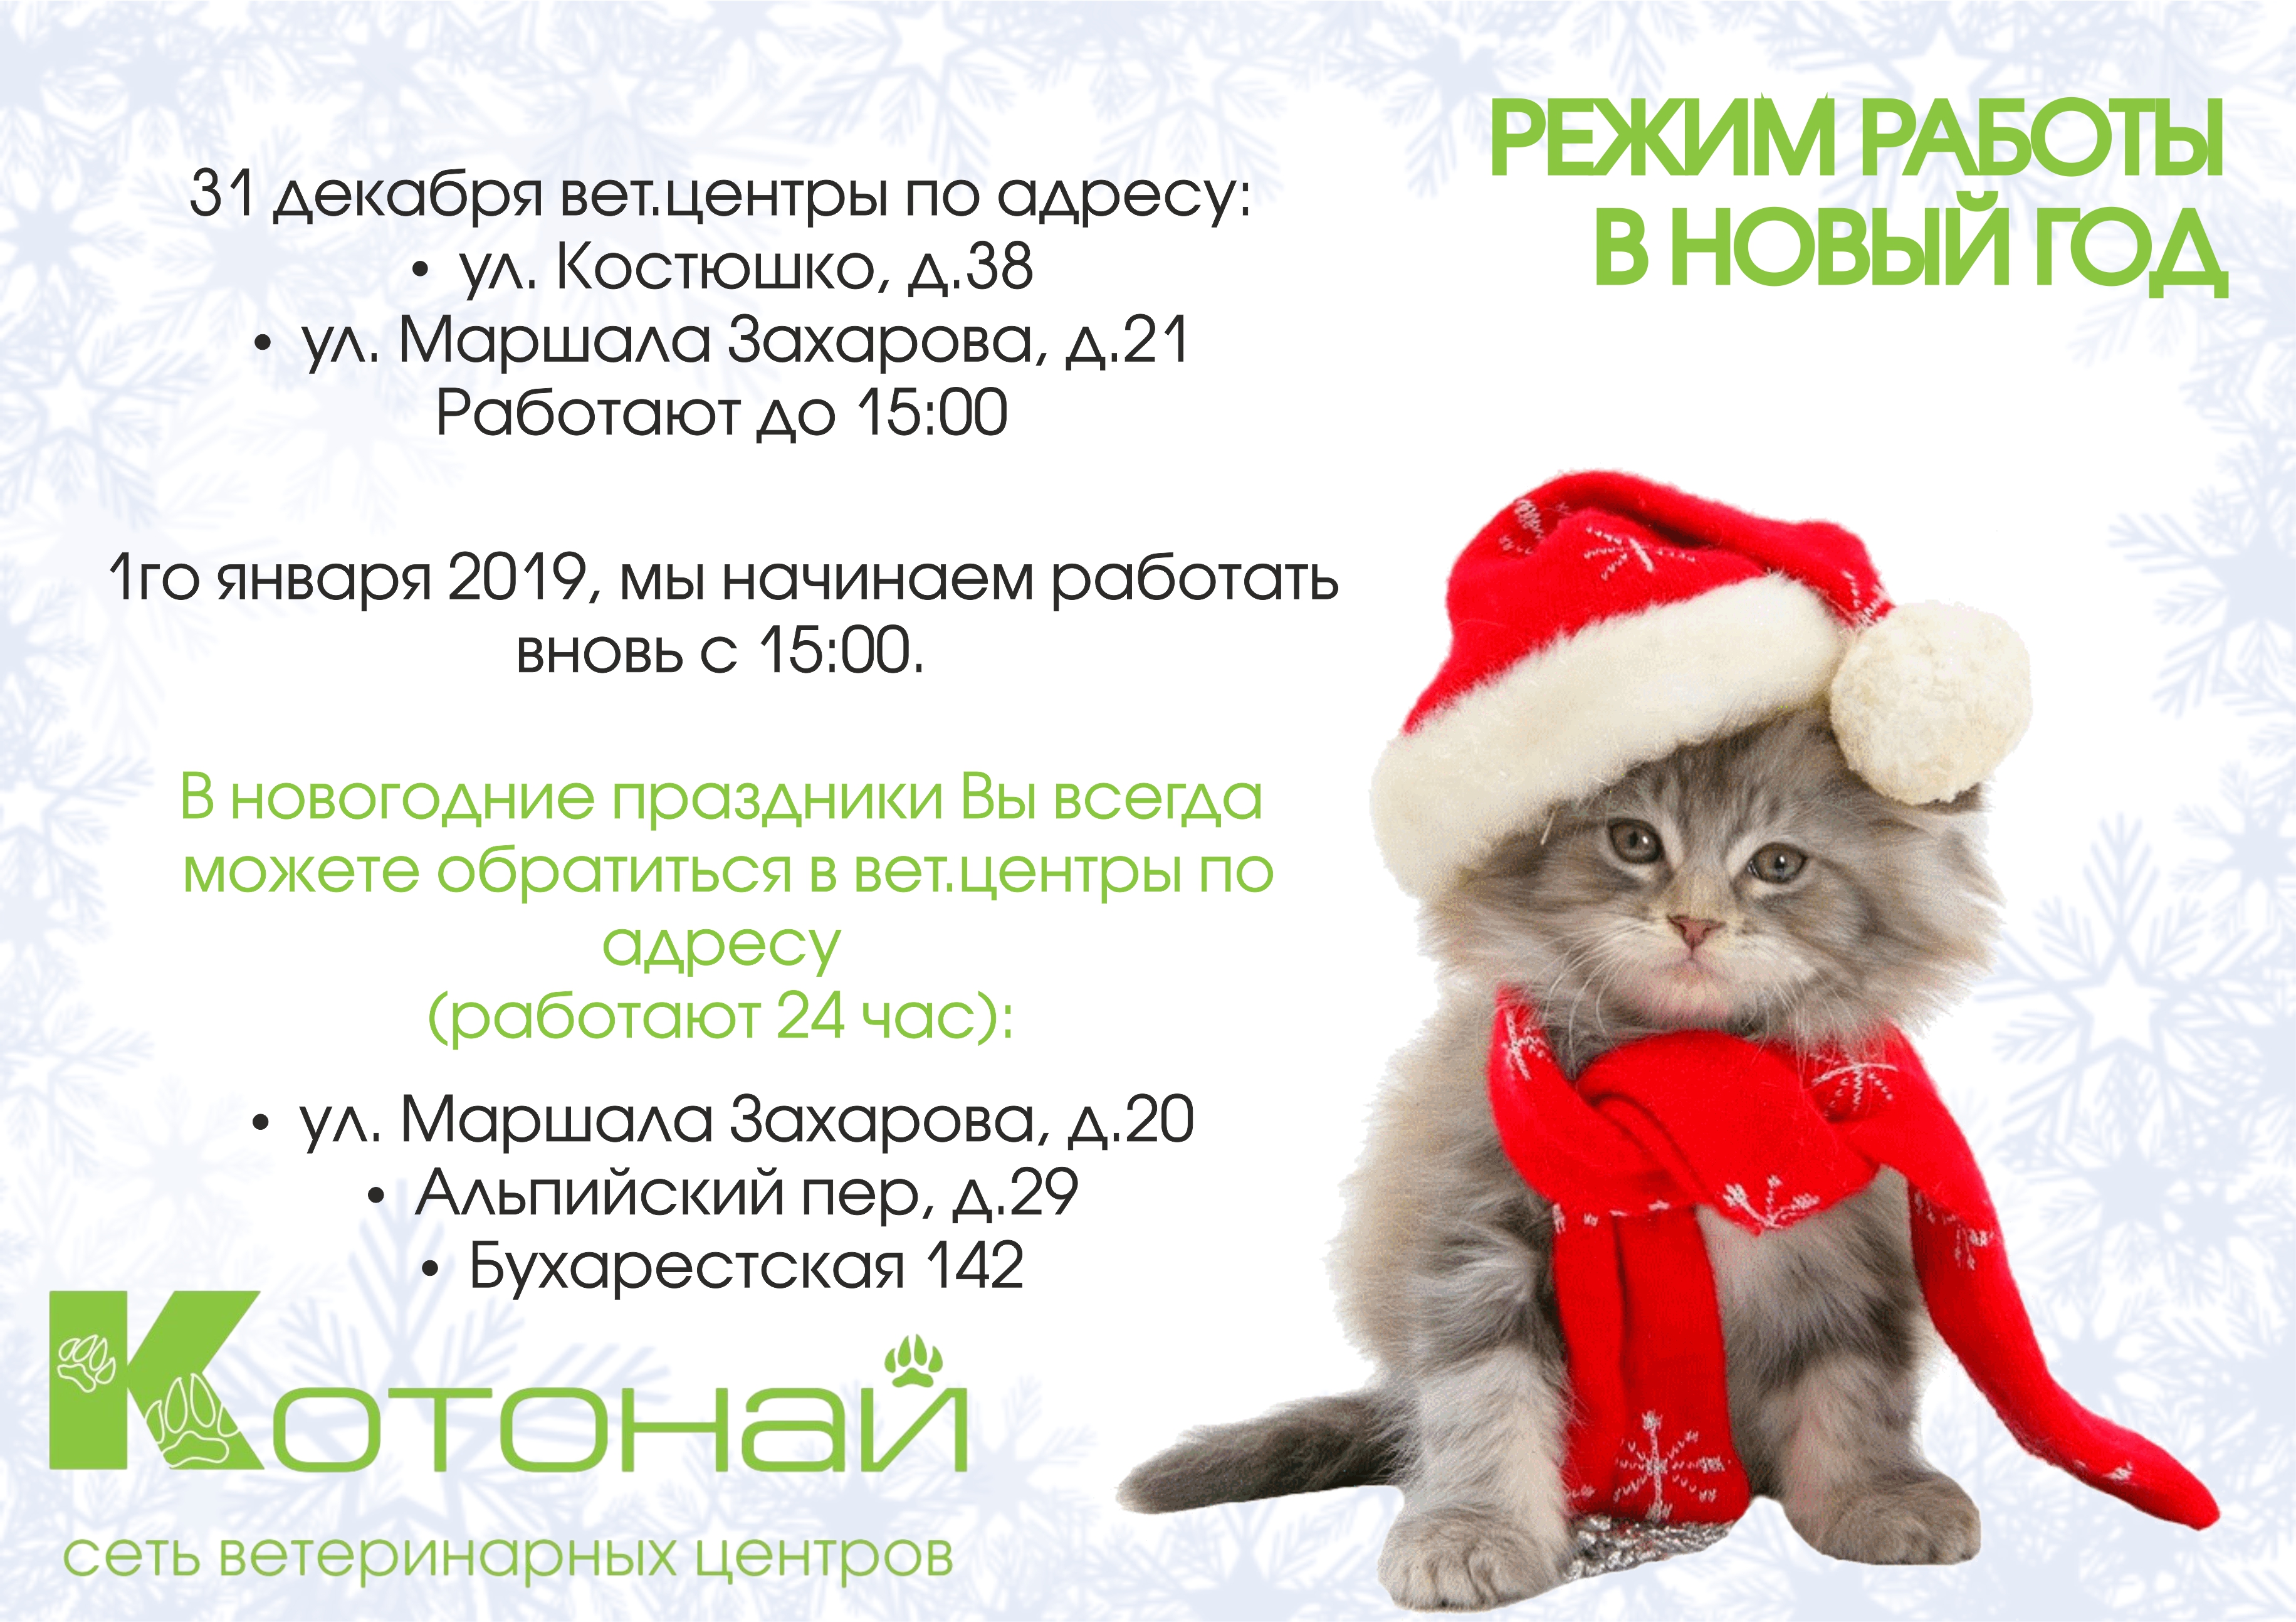 Режим работы ветеринарных центров в новогоднюю ночь в Санкт-Петербурге